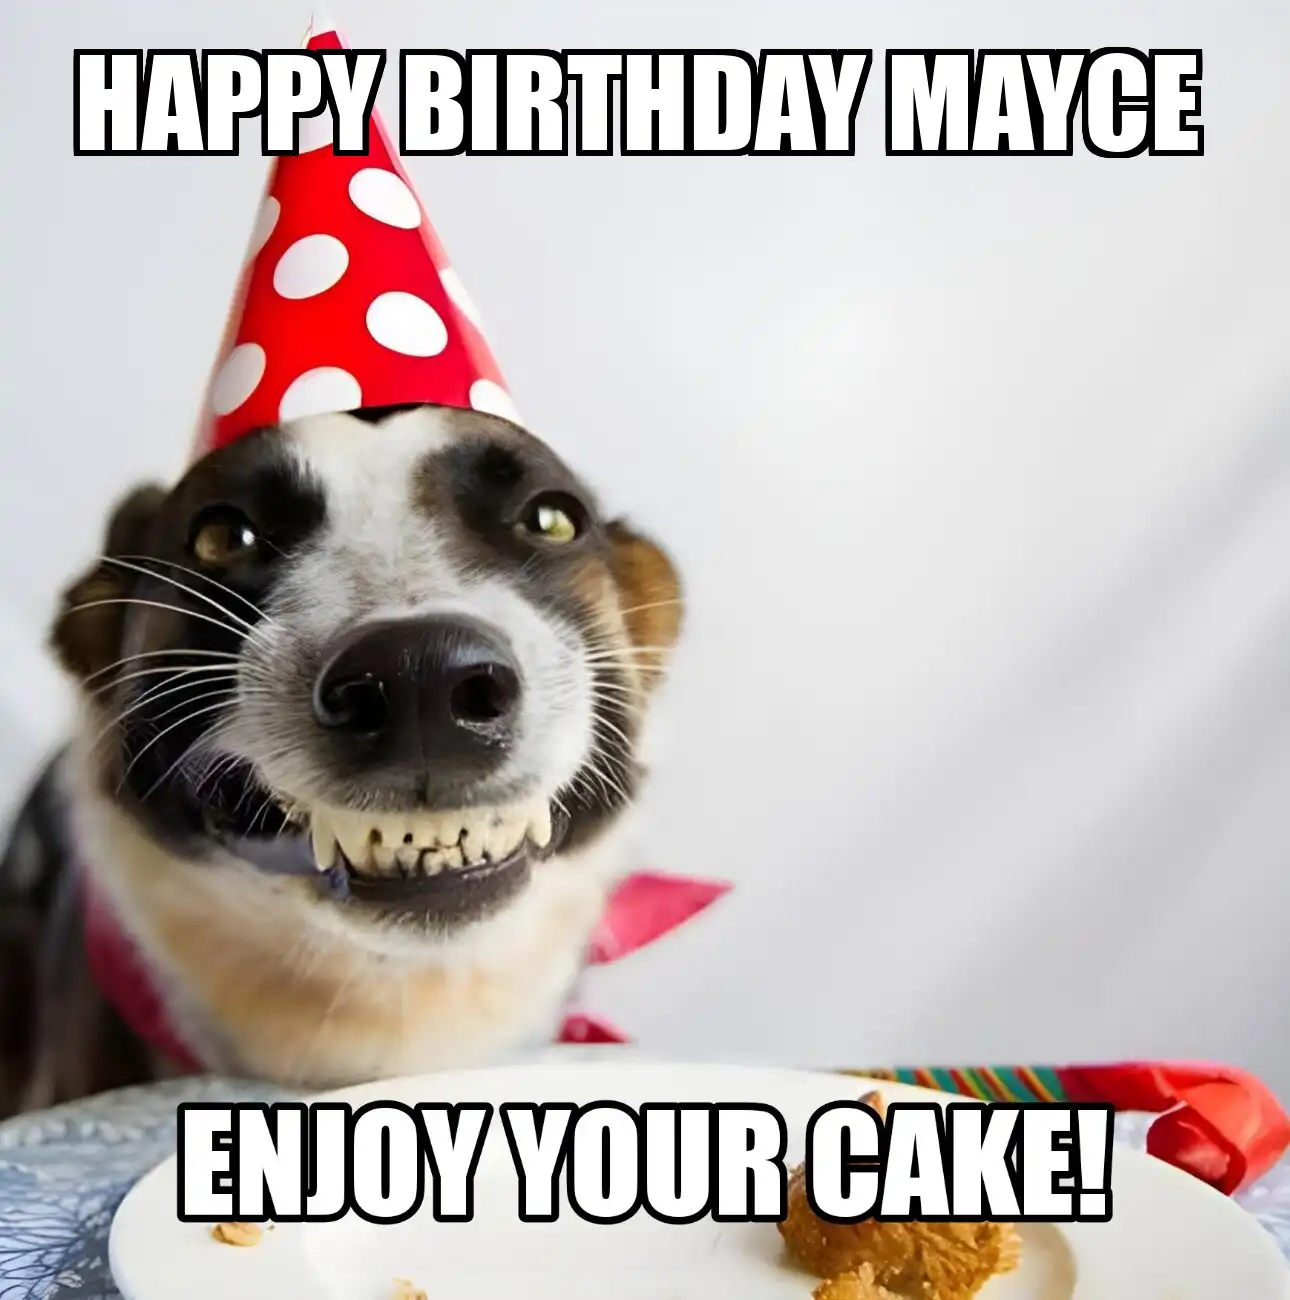 Happy Birthday Mayce Enjoy Your Cake Dog Meme